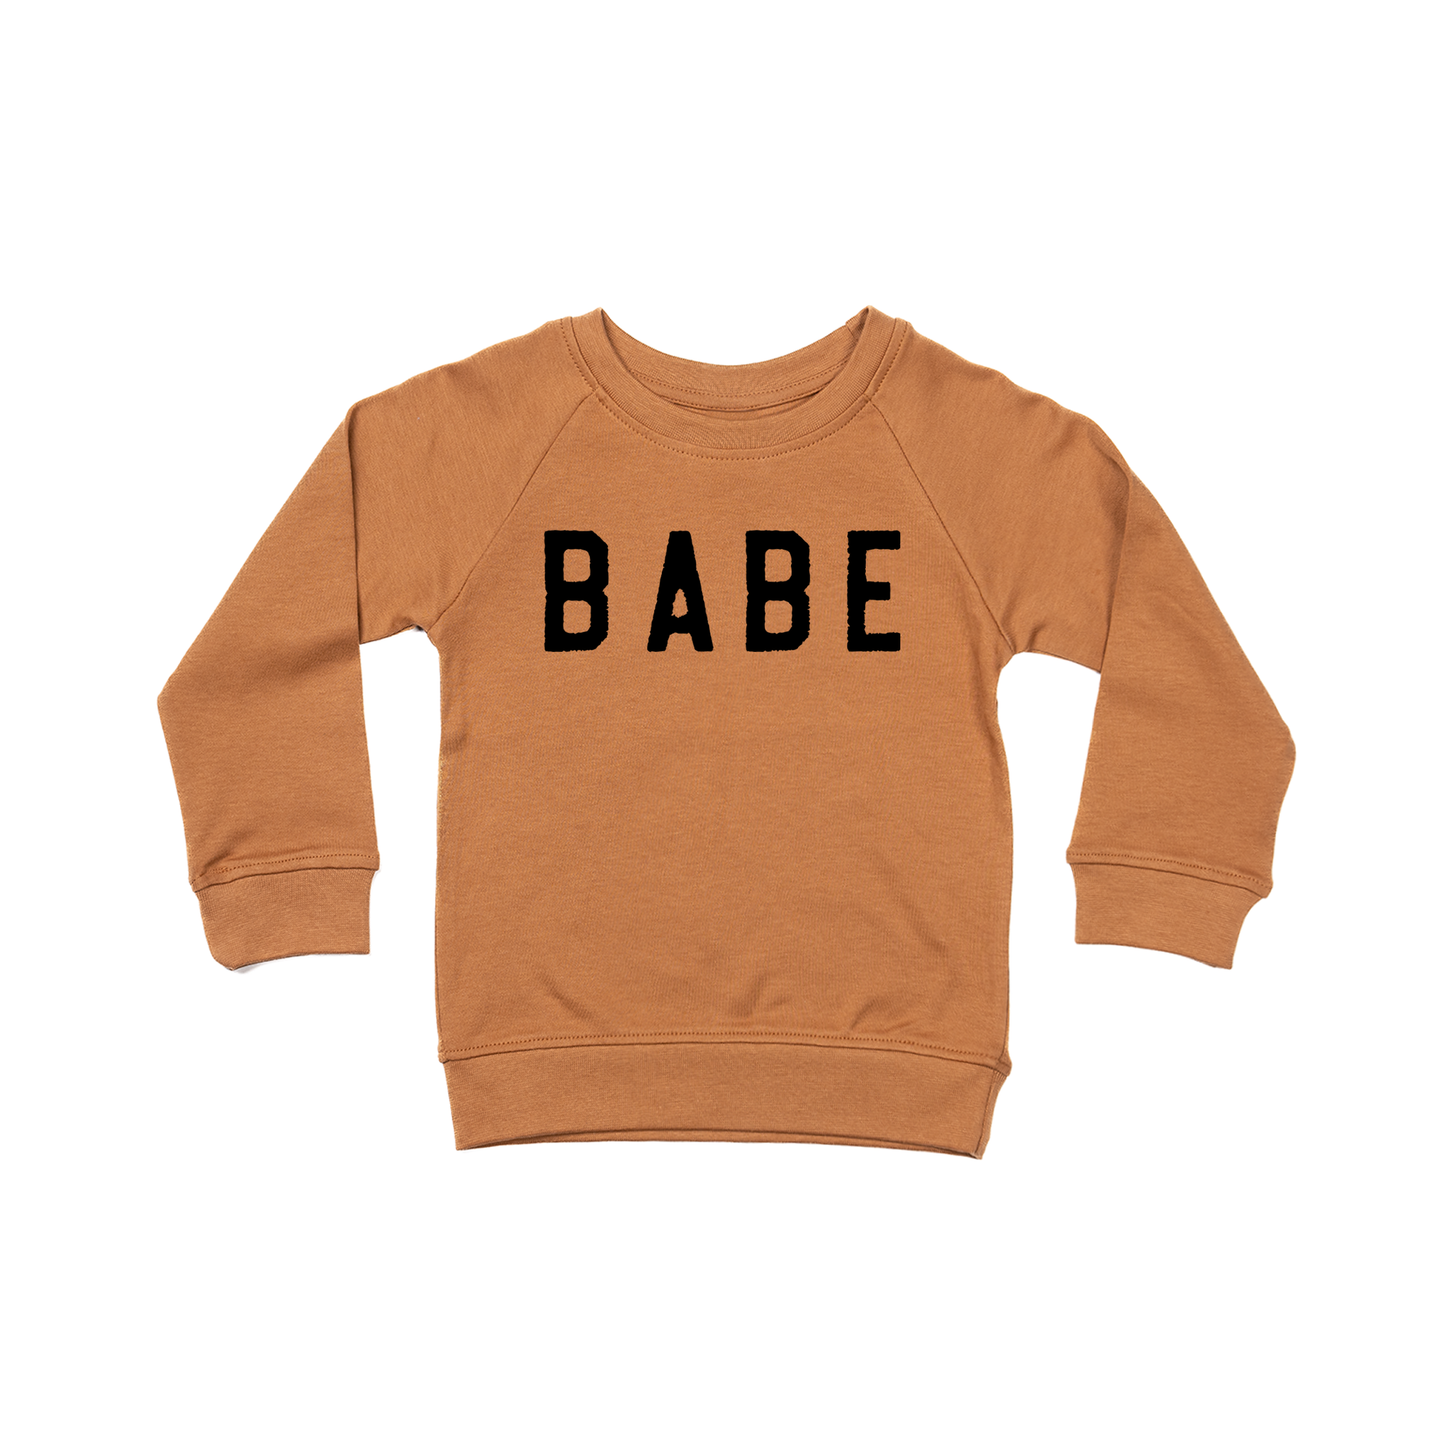 BABE (Rough, Black) - Kids Sweatshirt (Camel)